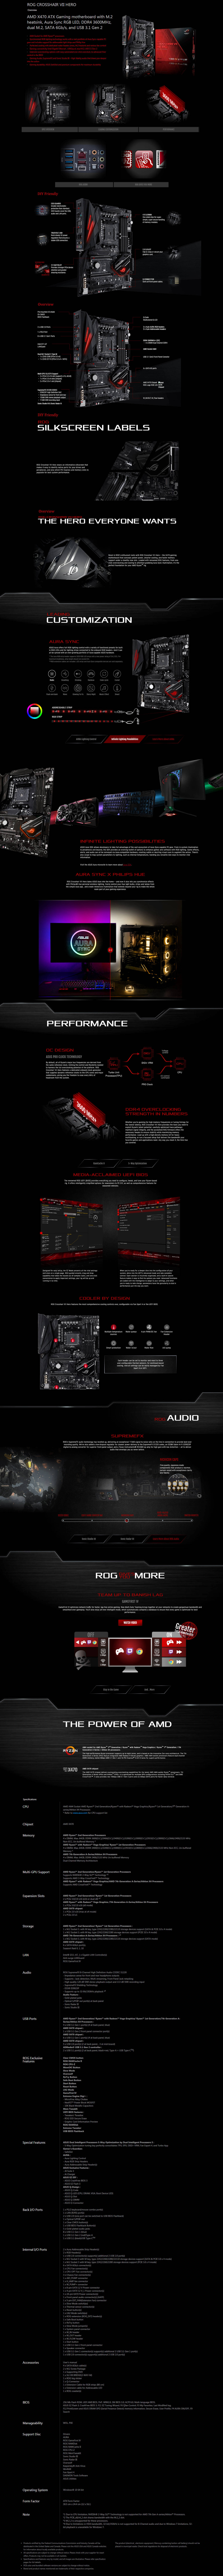  Buy Online Asus ROG Crosshair VII Hero AMD AM4 Socket Motherboard